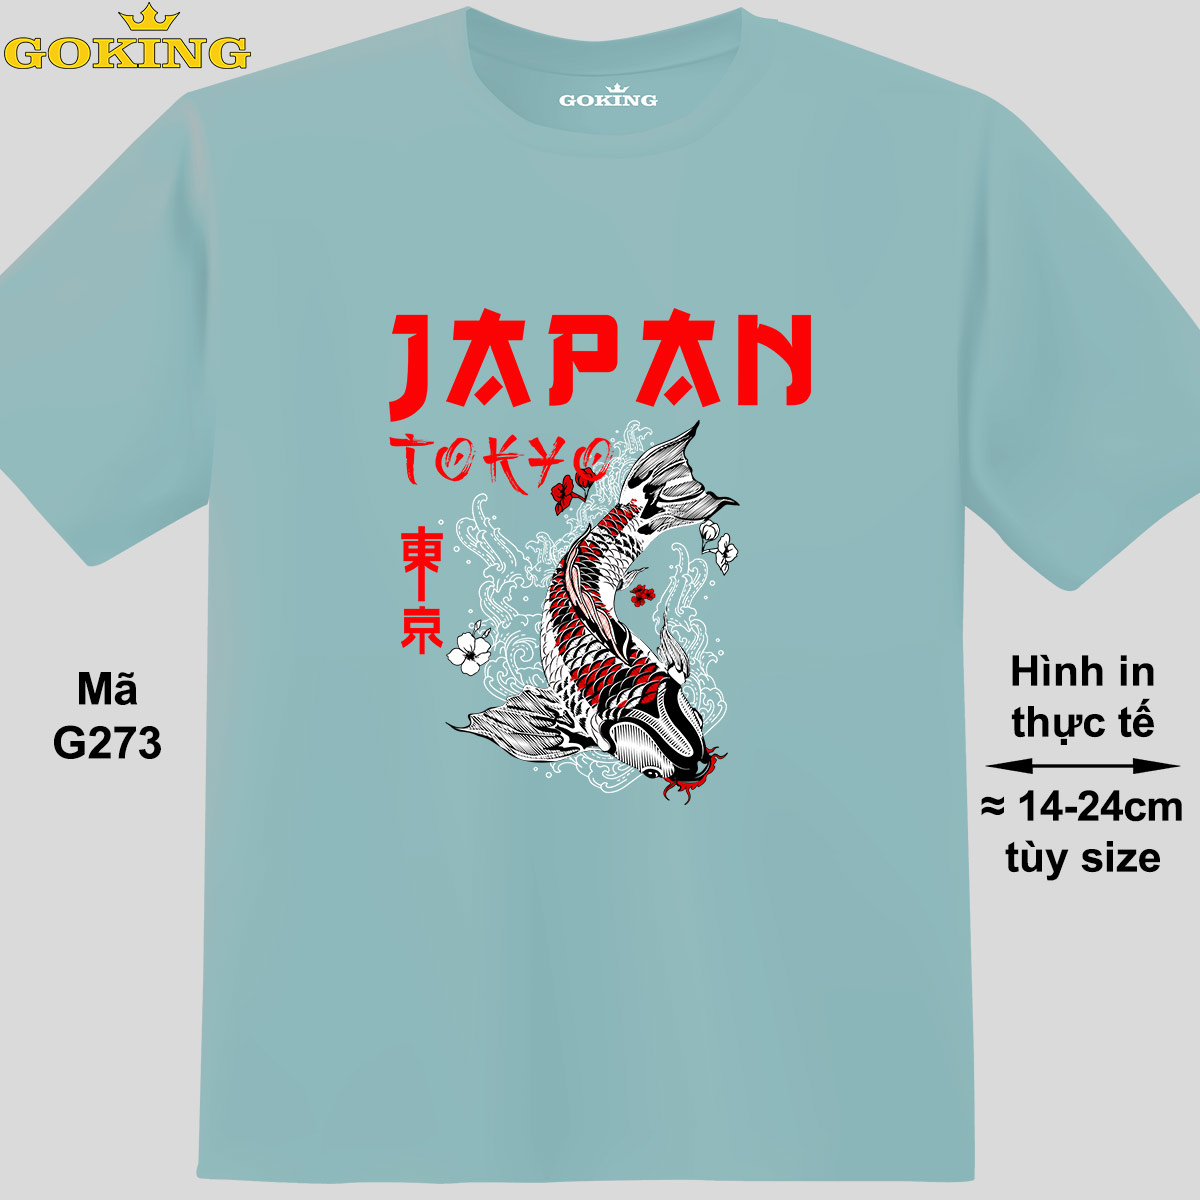 JAPAN, mã G273. Áo thun in hình chữ siêu đẹp. Áo phông hàng hiệu GOKING cho nam nữ, cặp đôi, teen, trung niên. Quà tặng cao cấp cho gia đình, doanh nghiệp